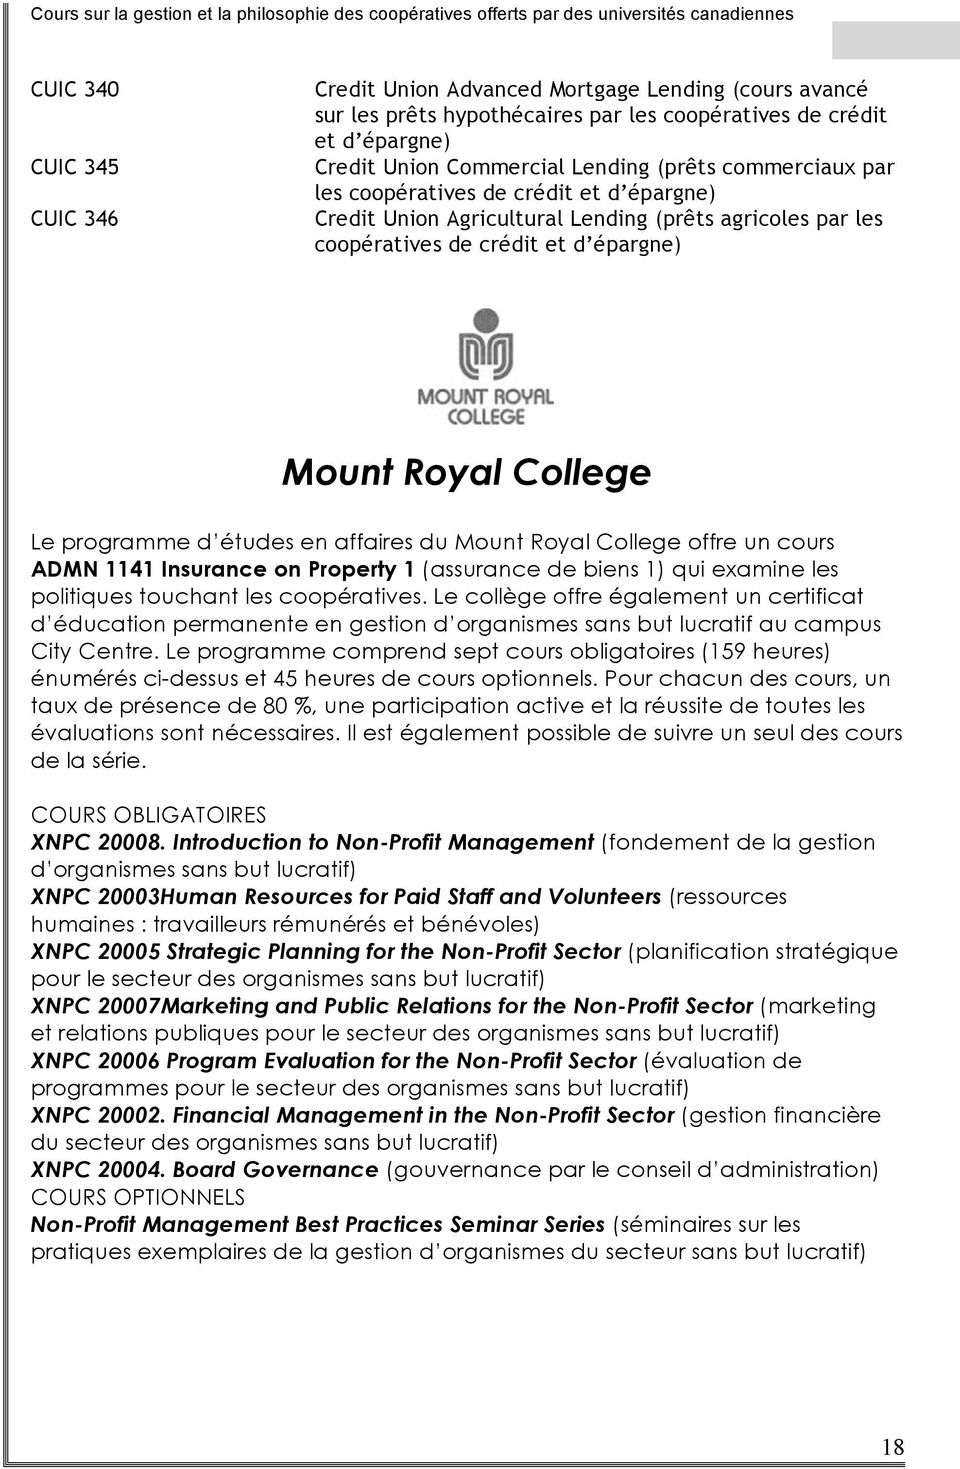 affaires du Mount Royal College offre un cours ADMN 1141 Insurance on Property 1 (assurance de biens 1) qui examine les politiques touchant les coopératives.